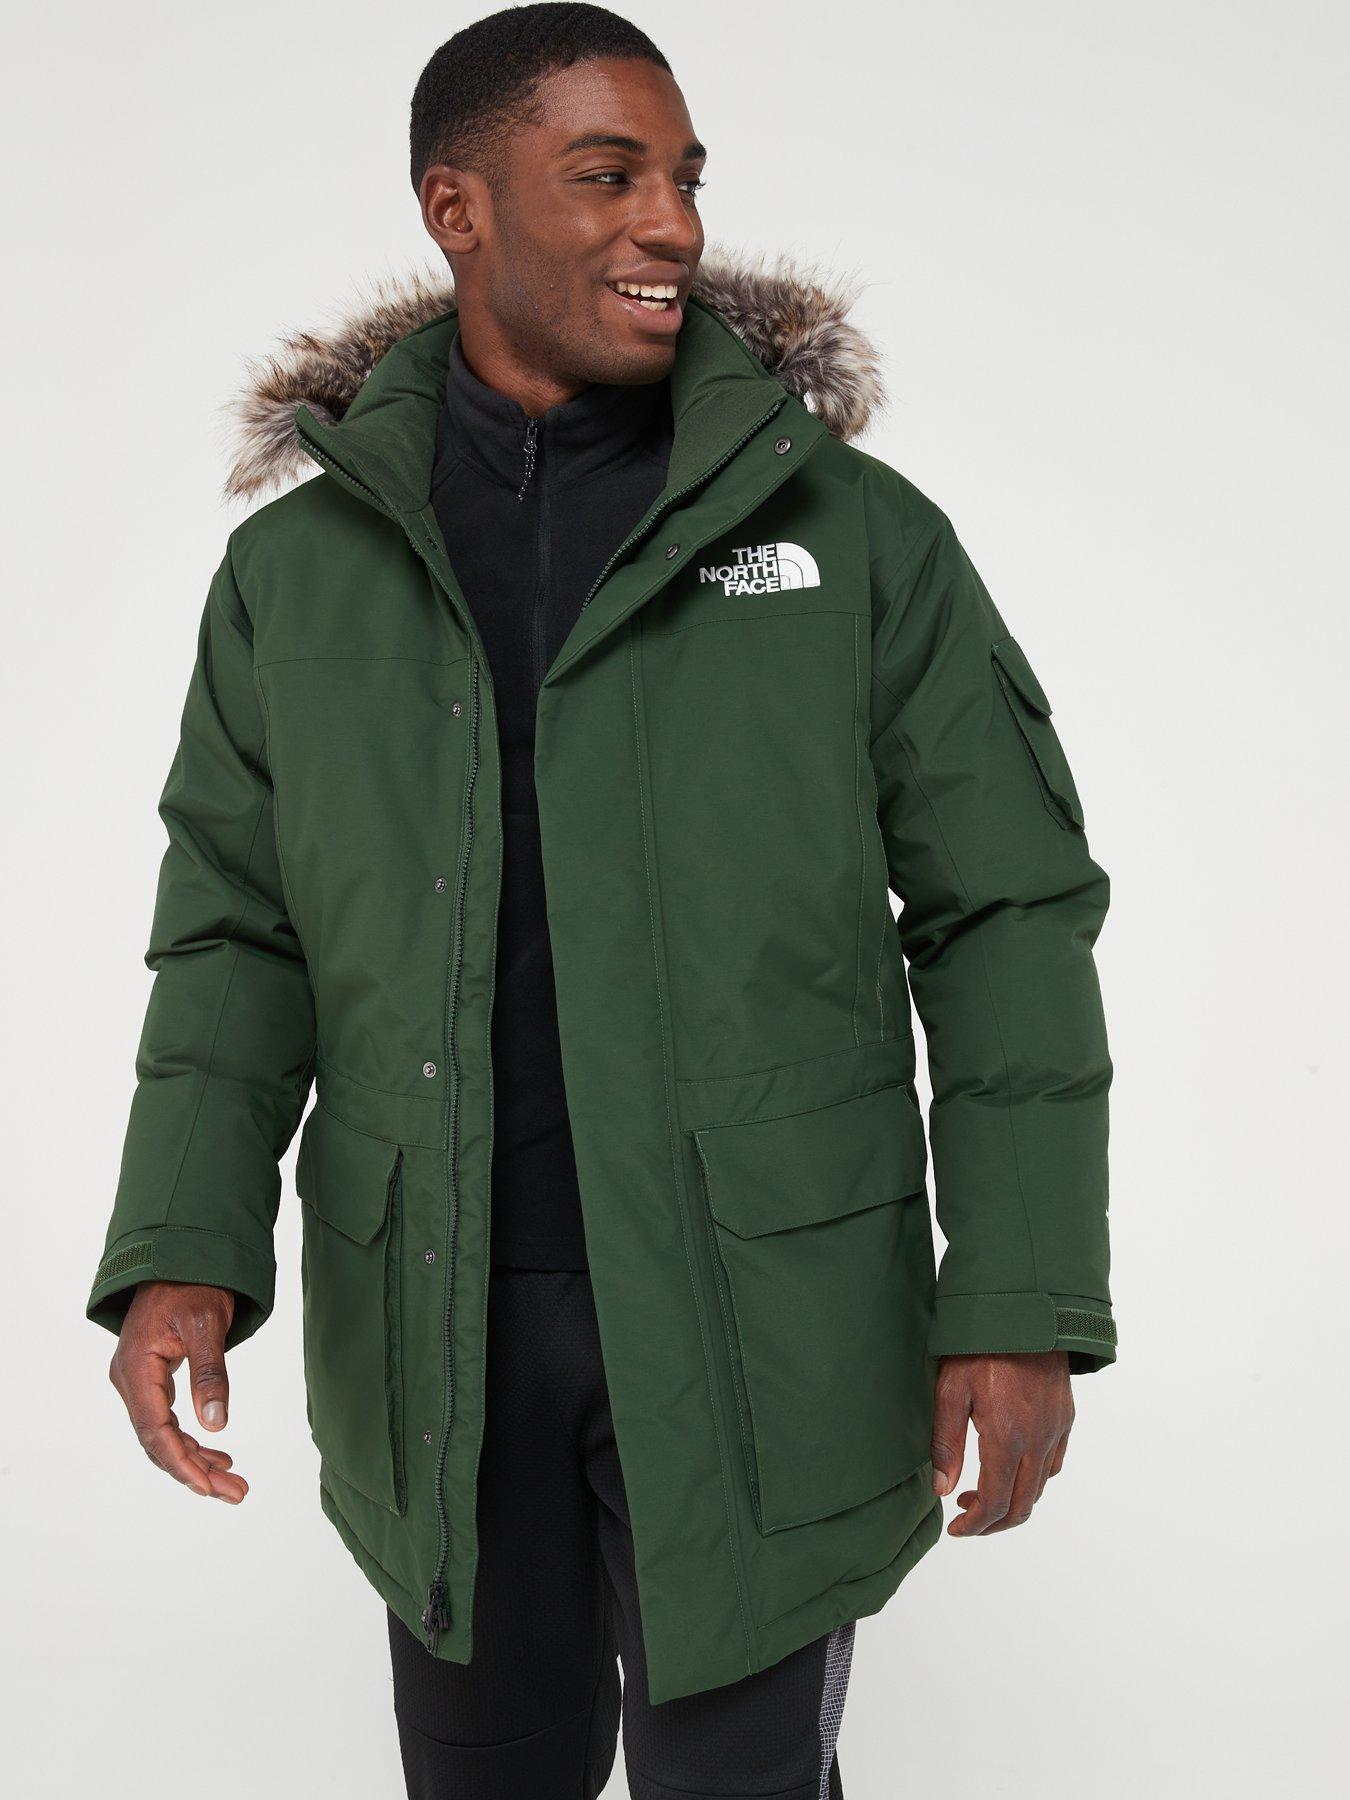 Men's Outdoor Jackets & Coats – 53 Degrees North